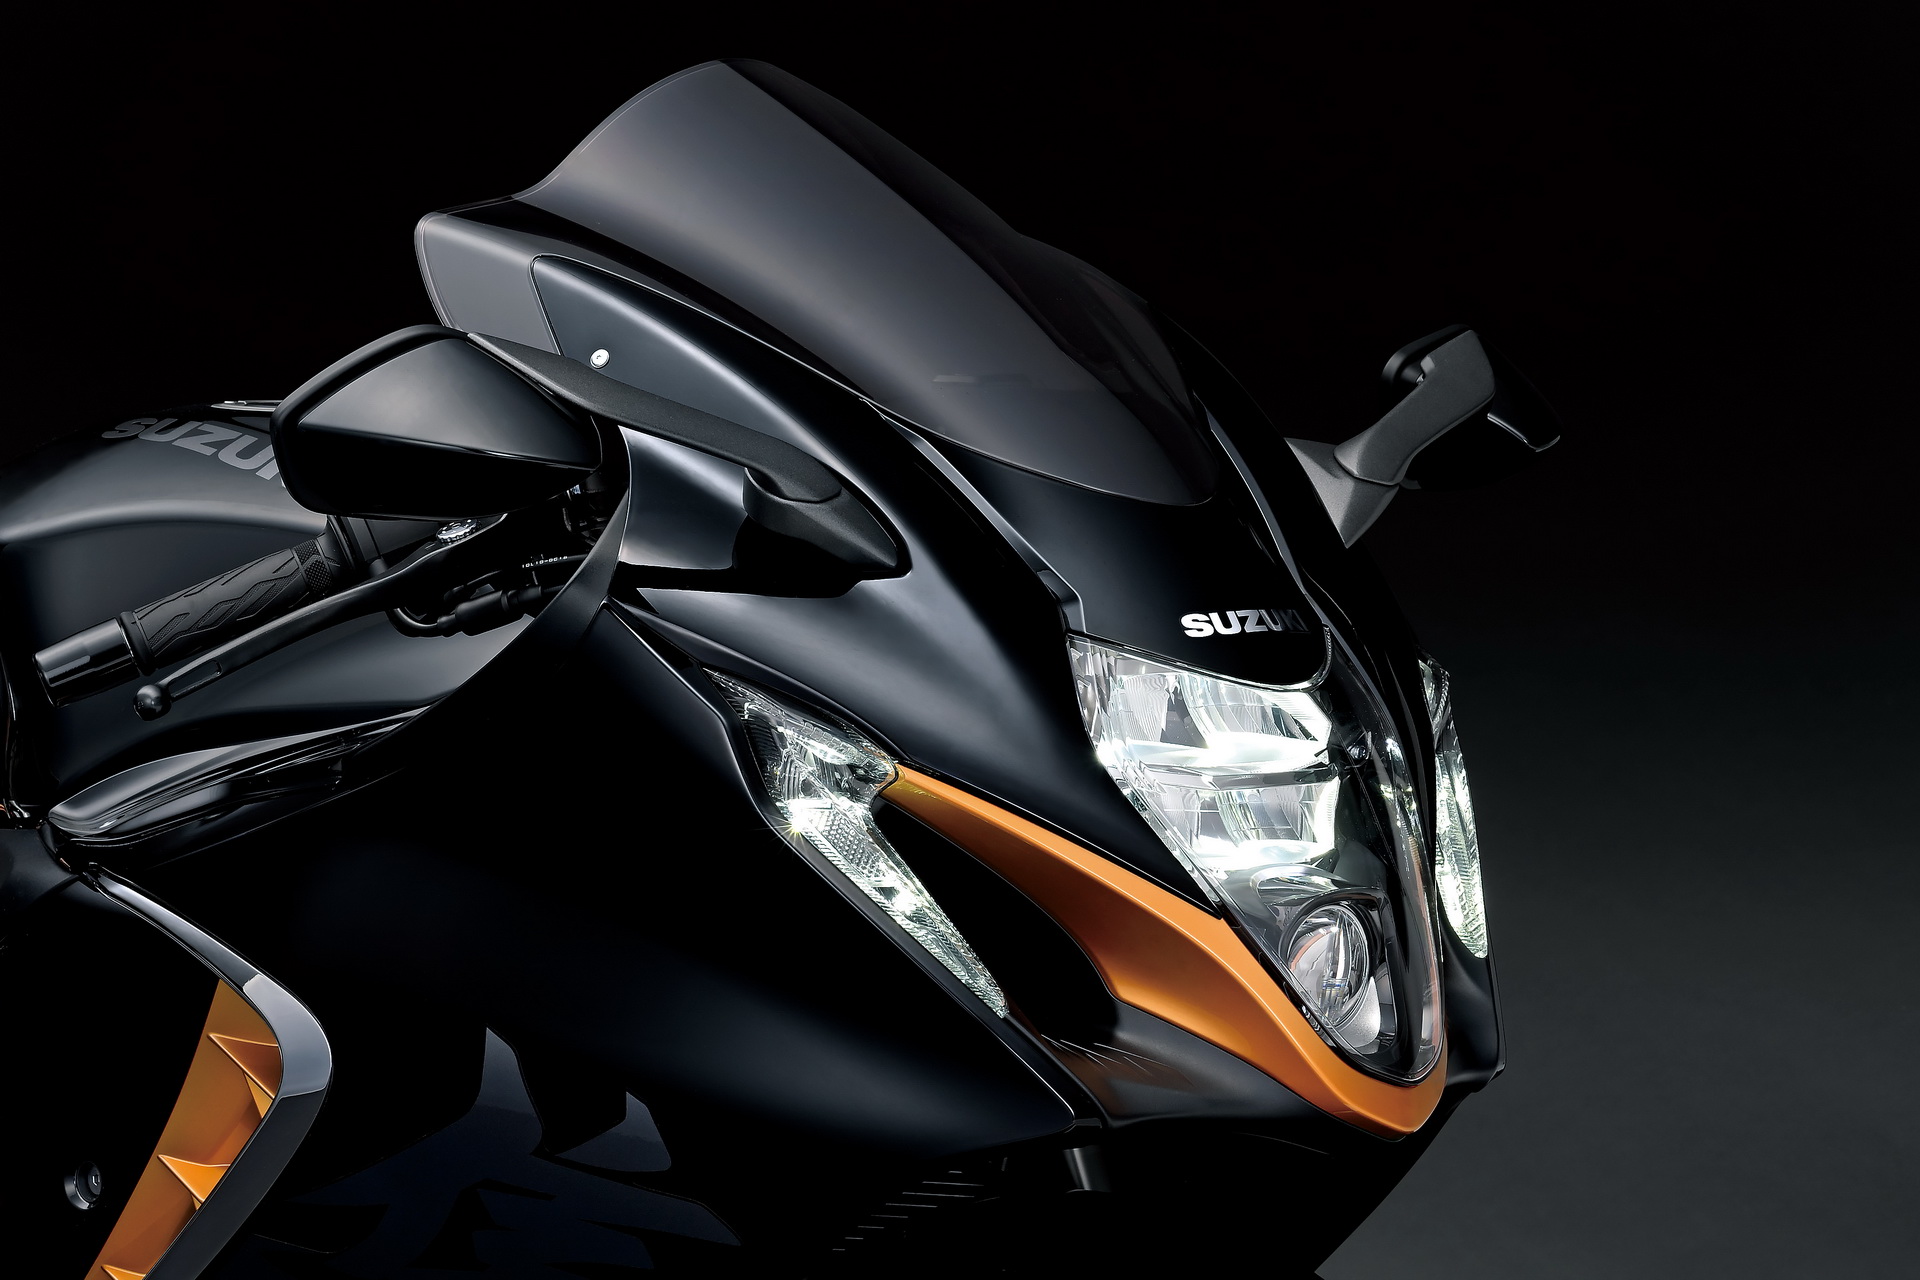 2021 Suzuki Hayabusa tanıtıldı: Yeni güvenlik teknolojileri ve 300 km/s maksimum hız